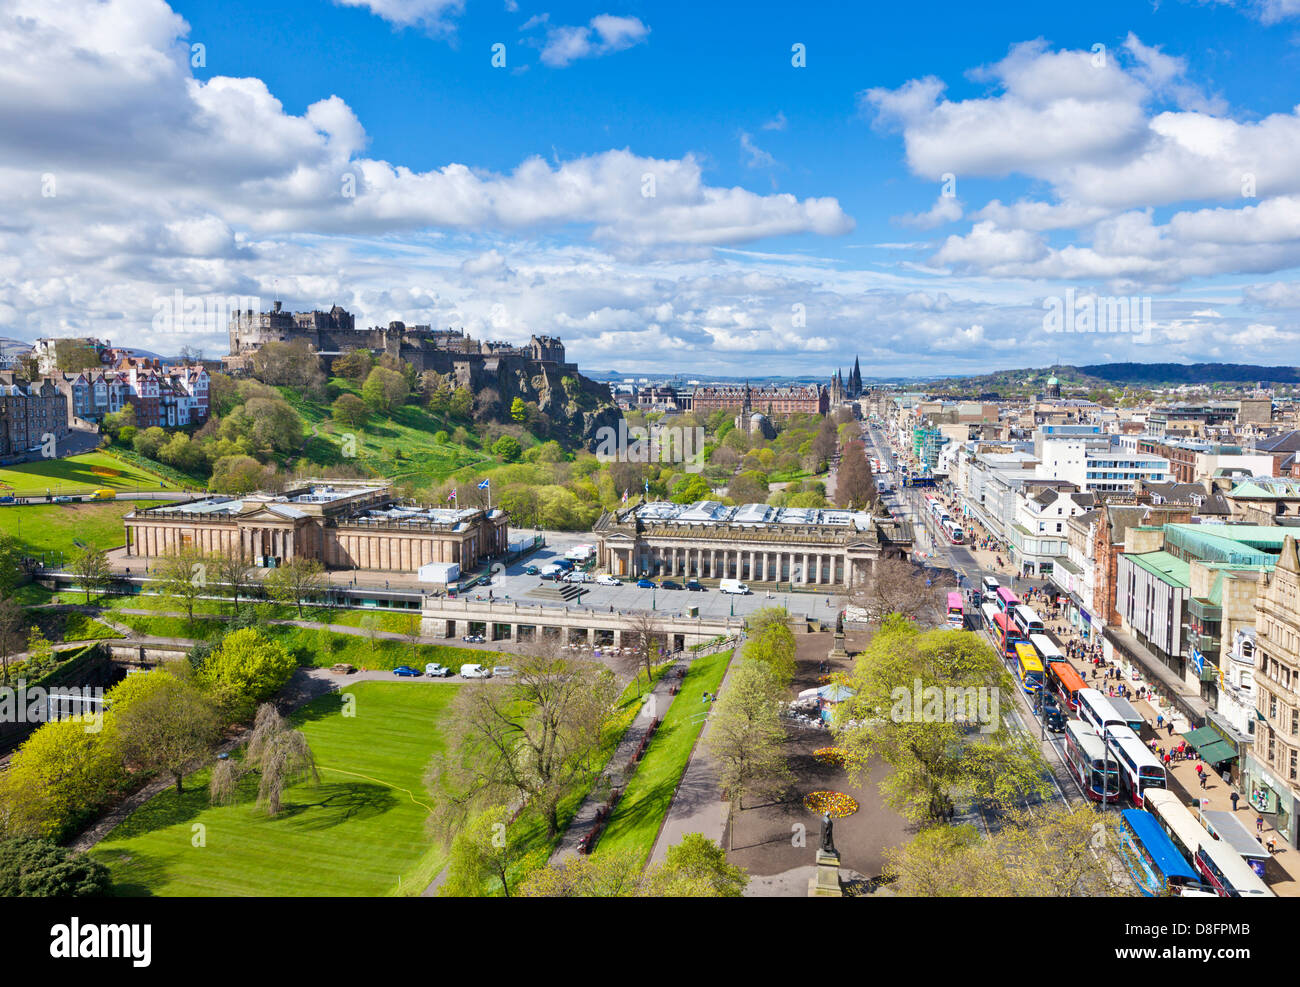 Les toits de la ville d'Edimbourg avec le casle Princes street et le centre-ville d'Édimbourg Edinburgh Scotland Midlothian UK GB EU Europe Banque D'Images